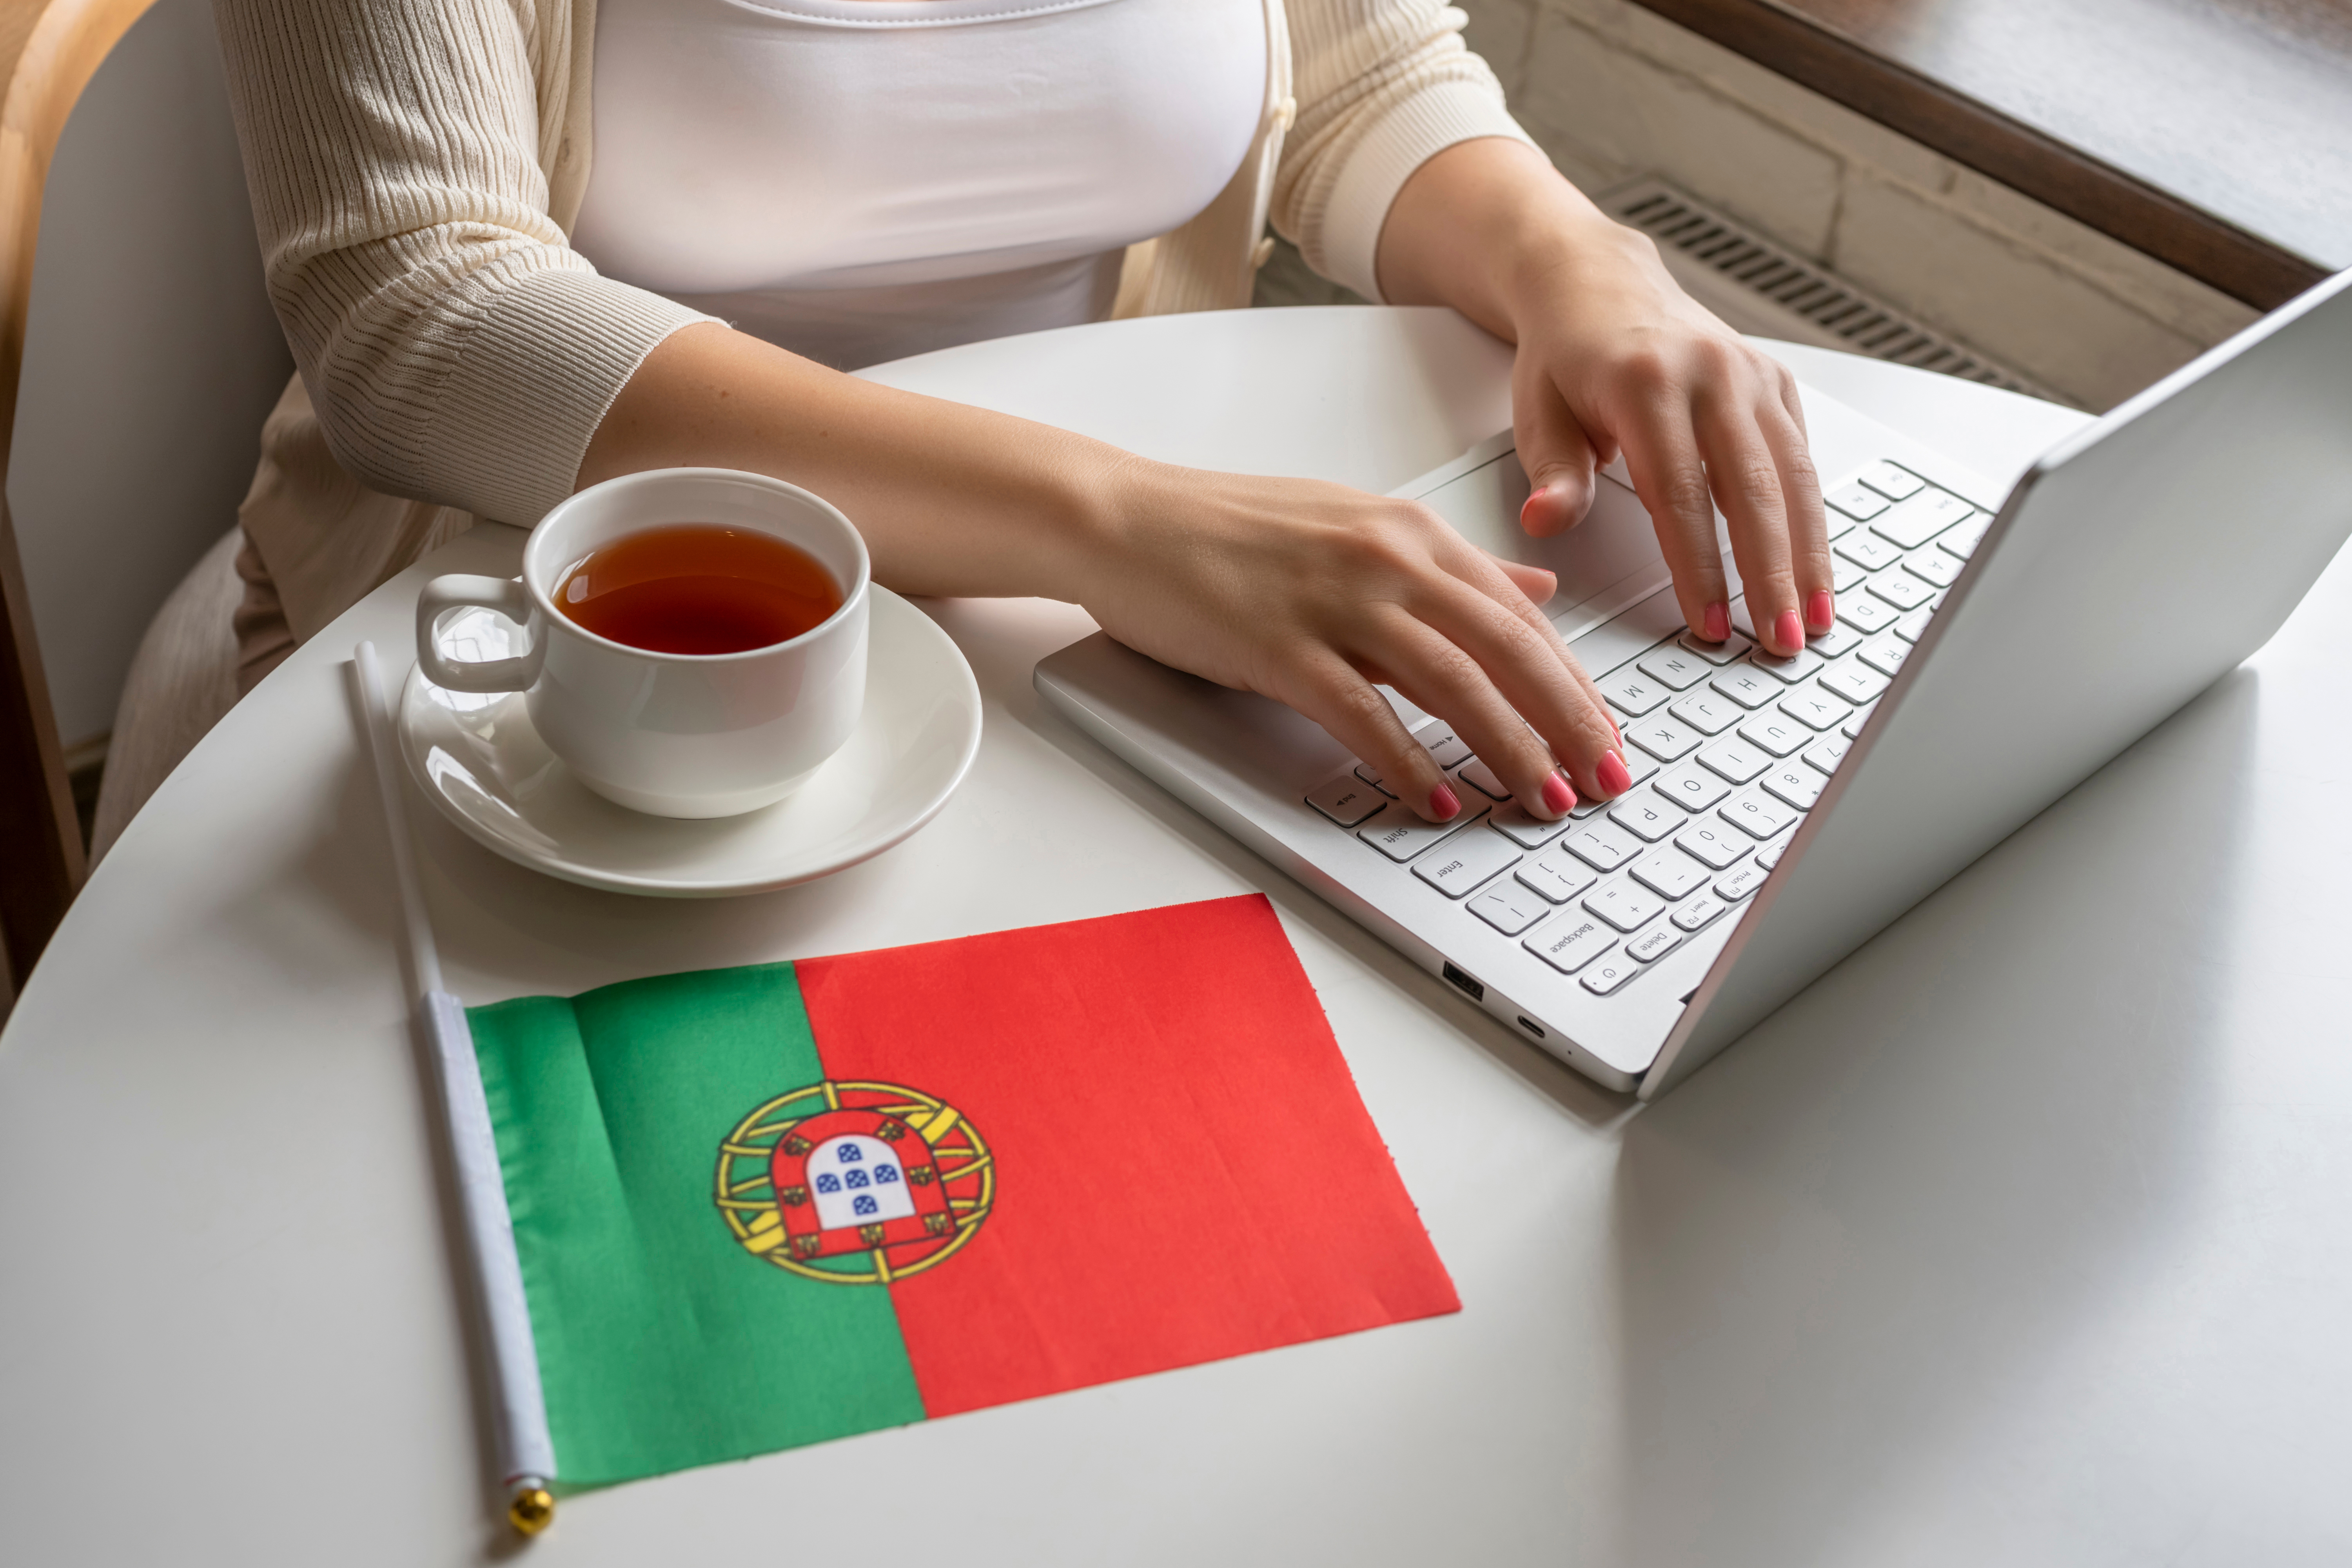 Девушка сидит за компьютером возле флага Португалии, где работа доступна для иностранцев